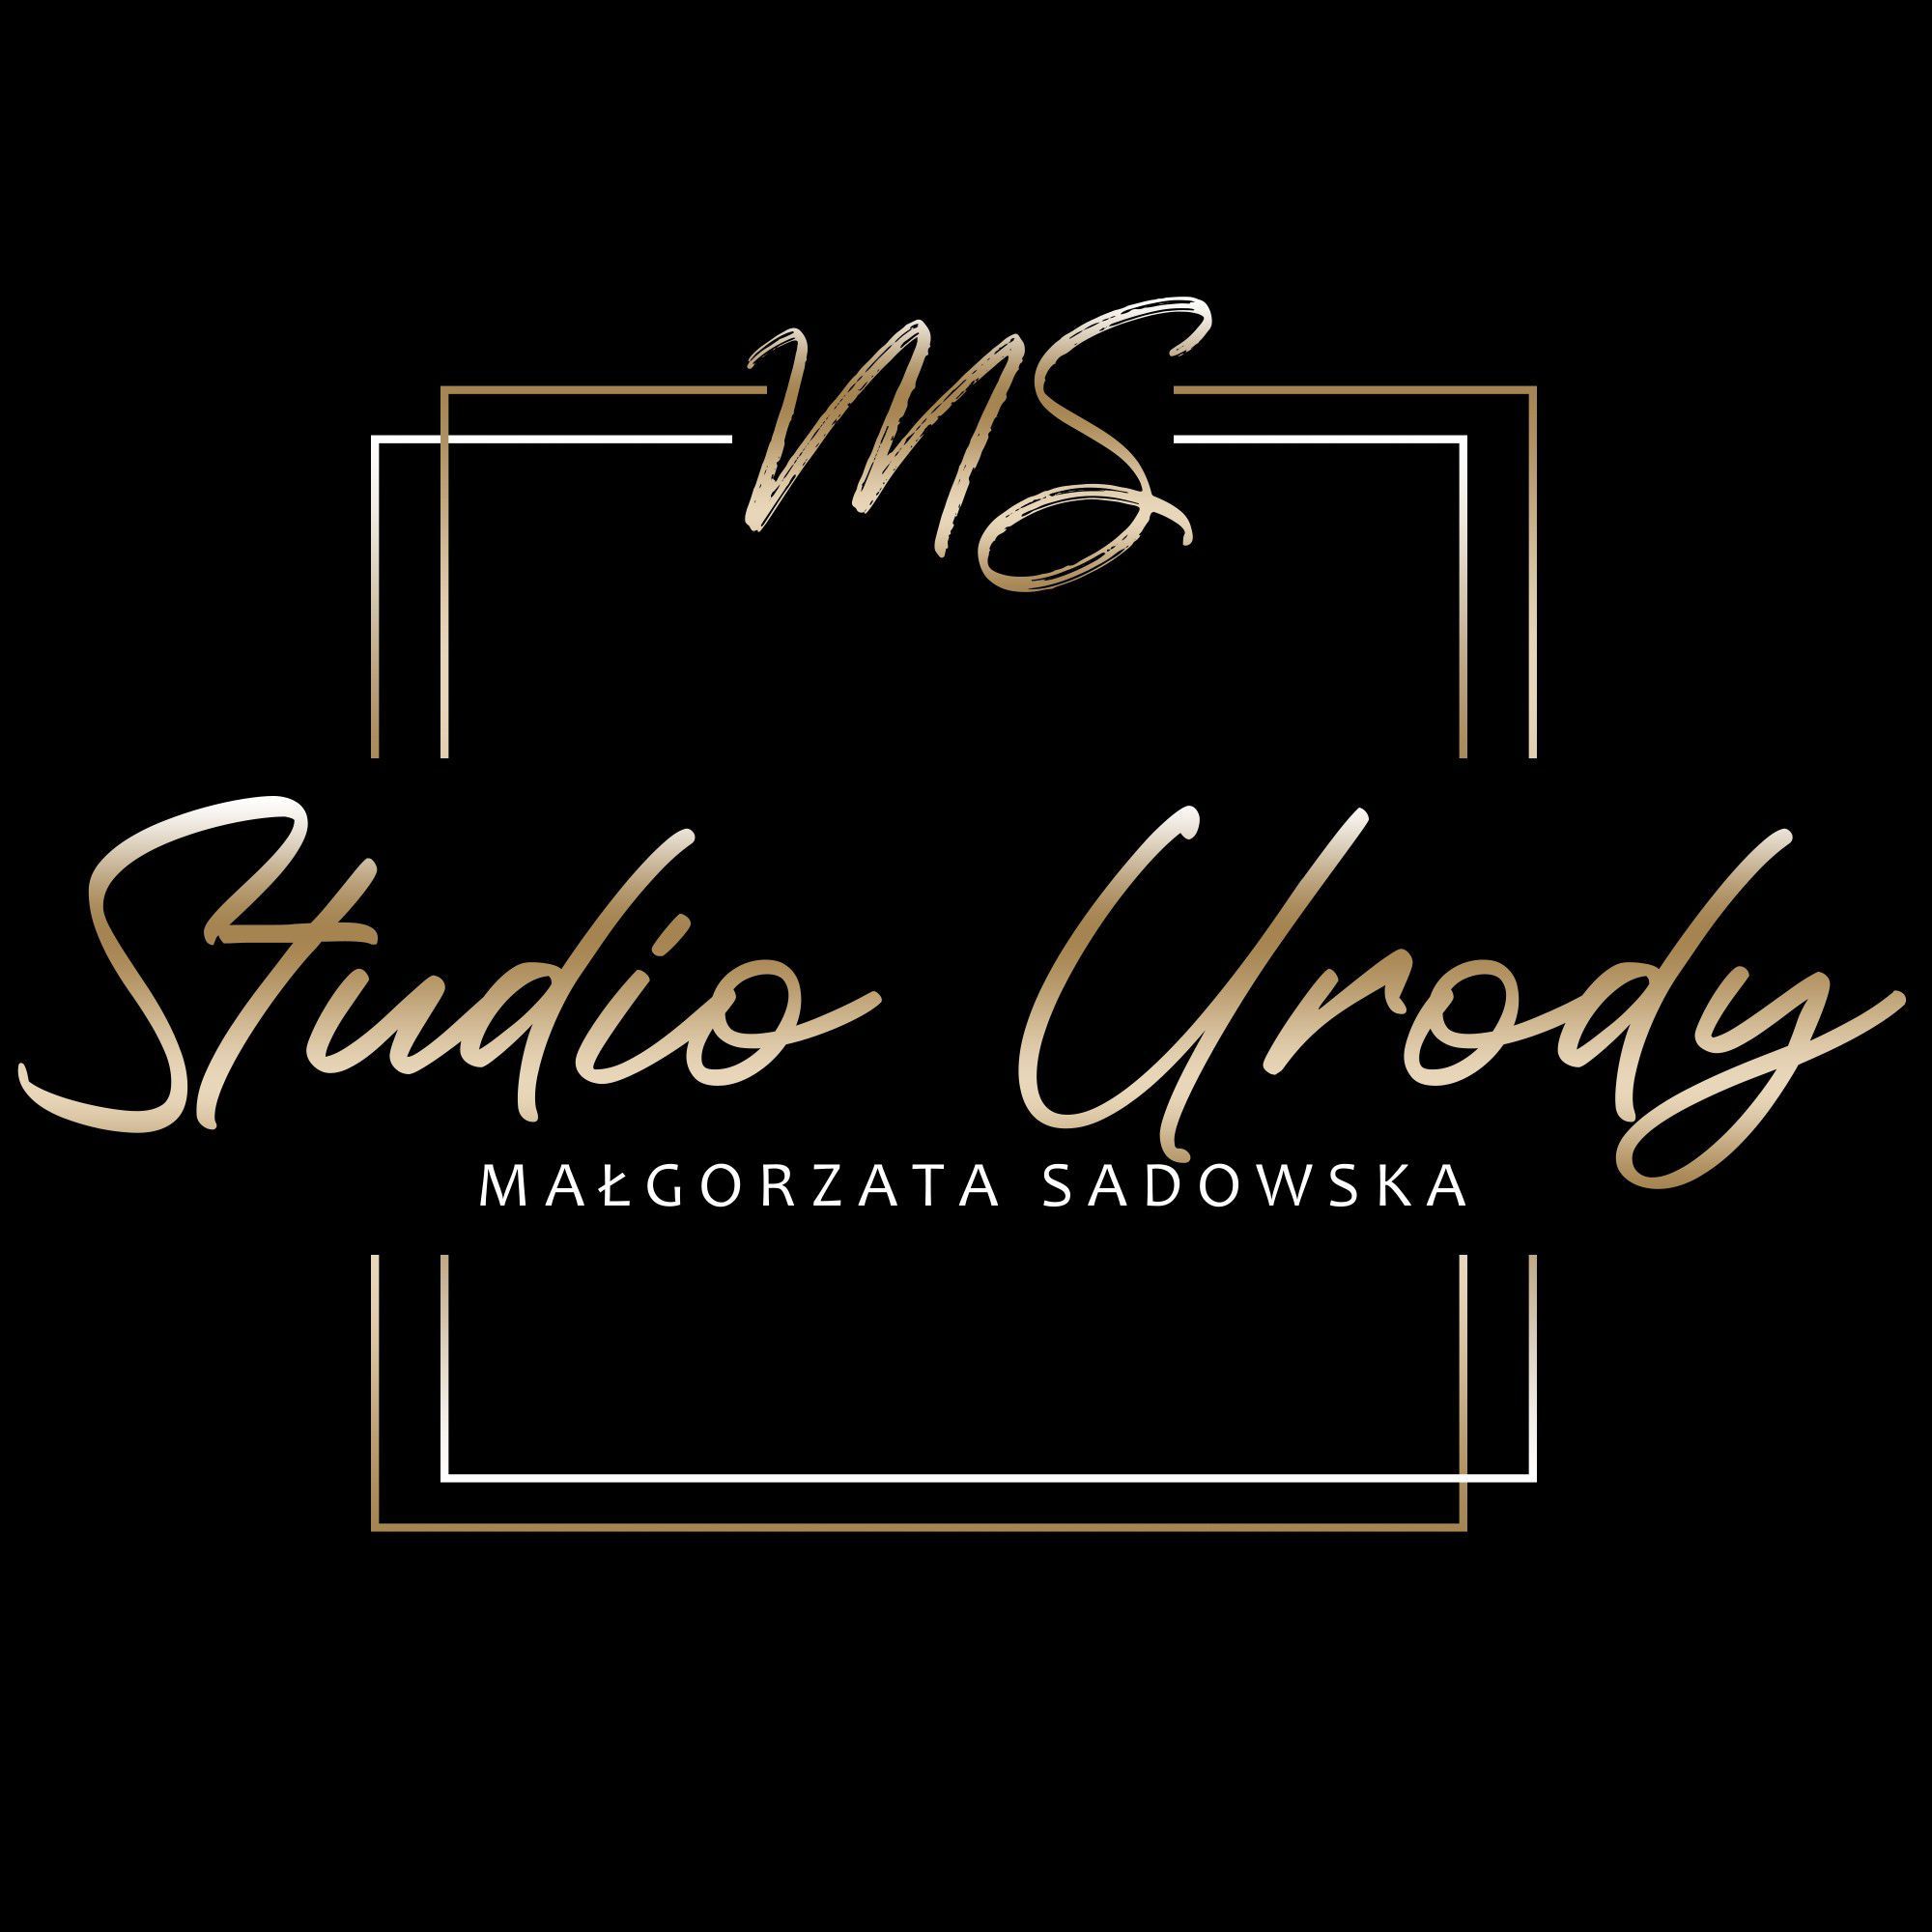 MS Studio Urody Małgorzata Sadowska, Bankowa 9,9a/3, 72-010, Police